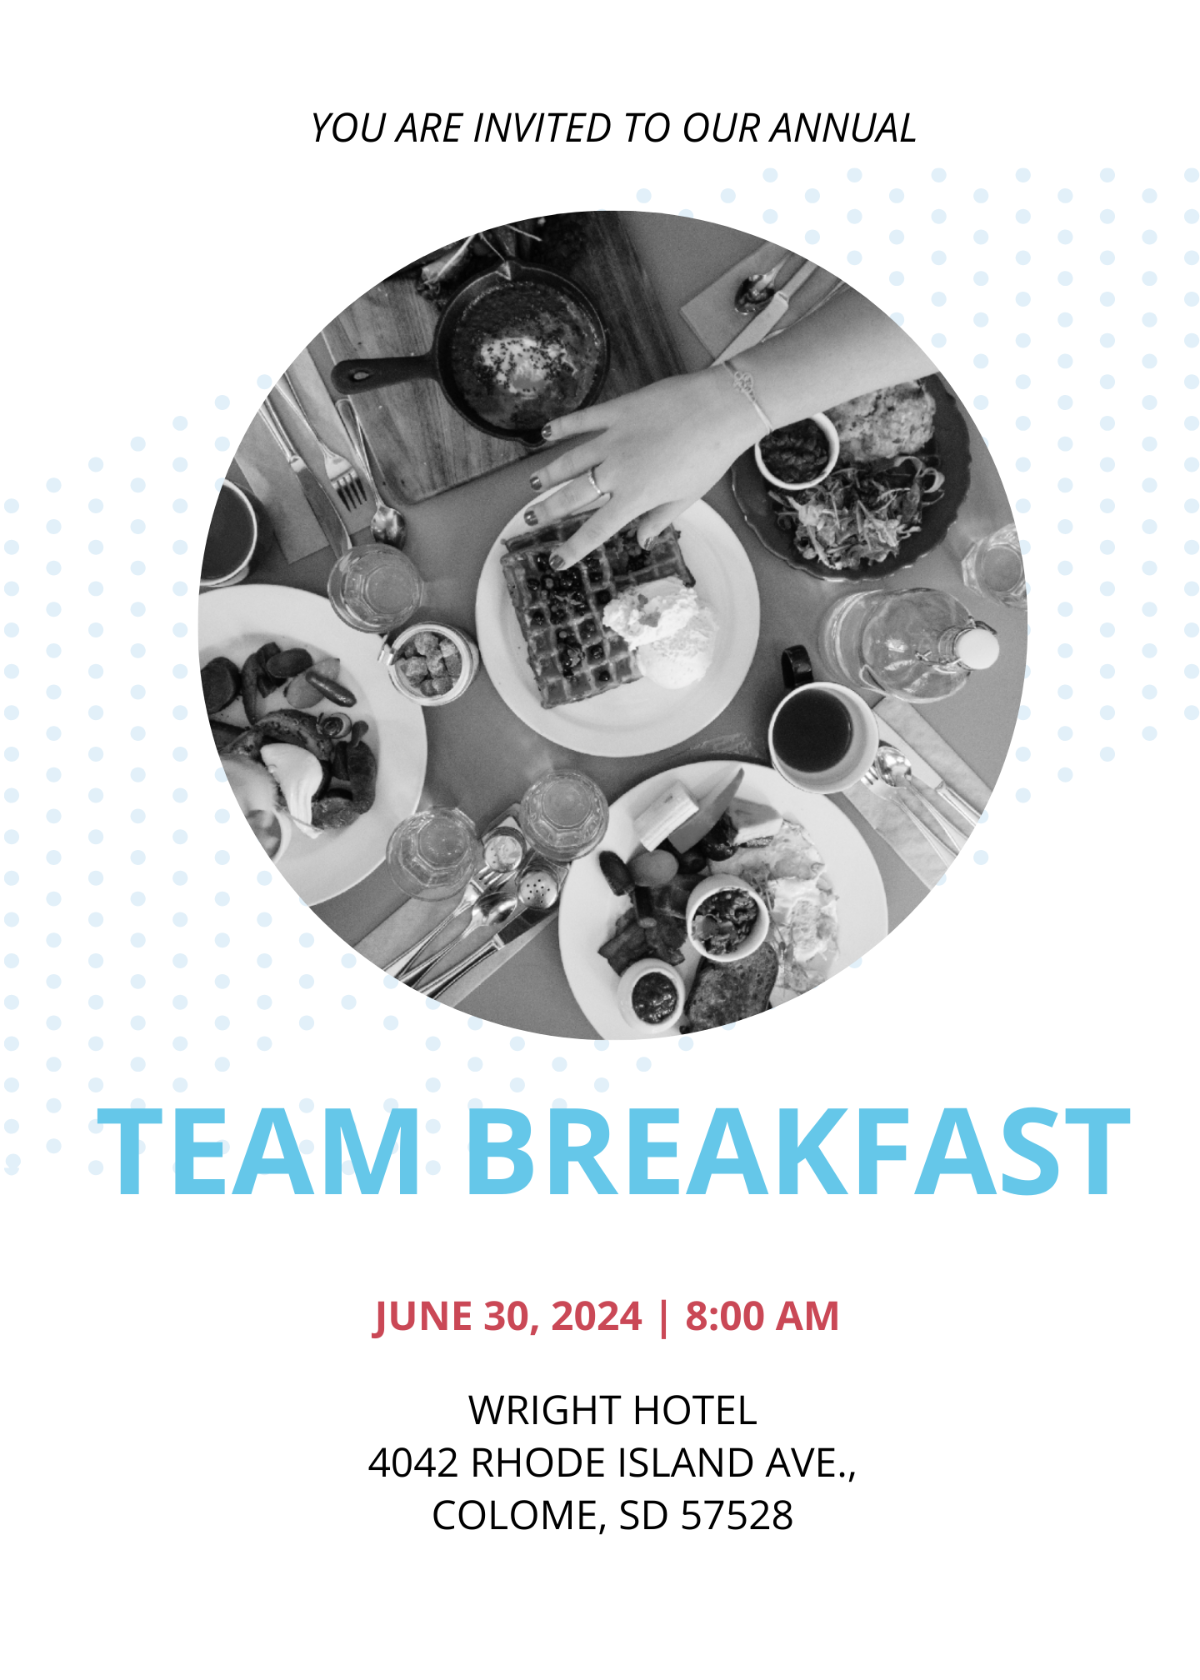 Team Breakfast Invitation